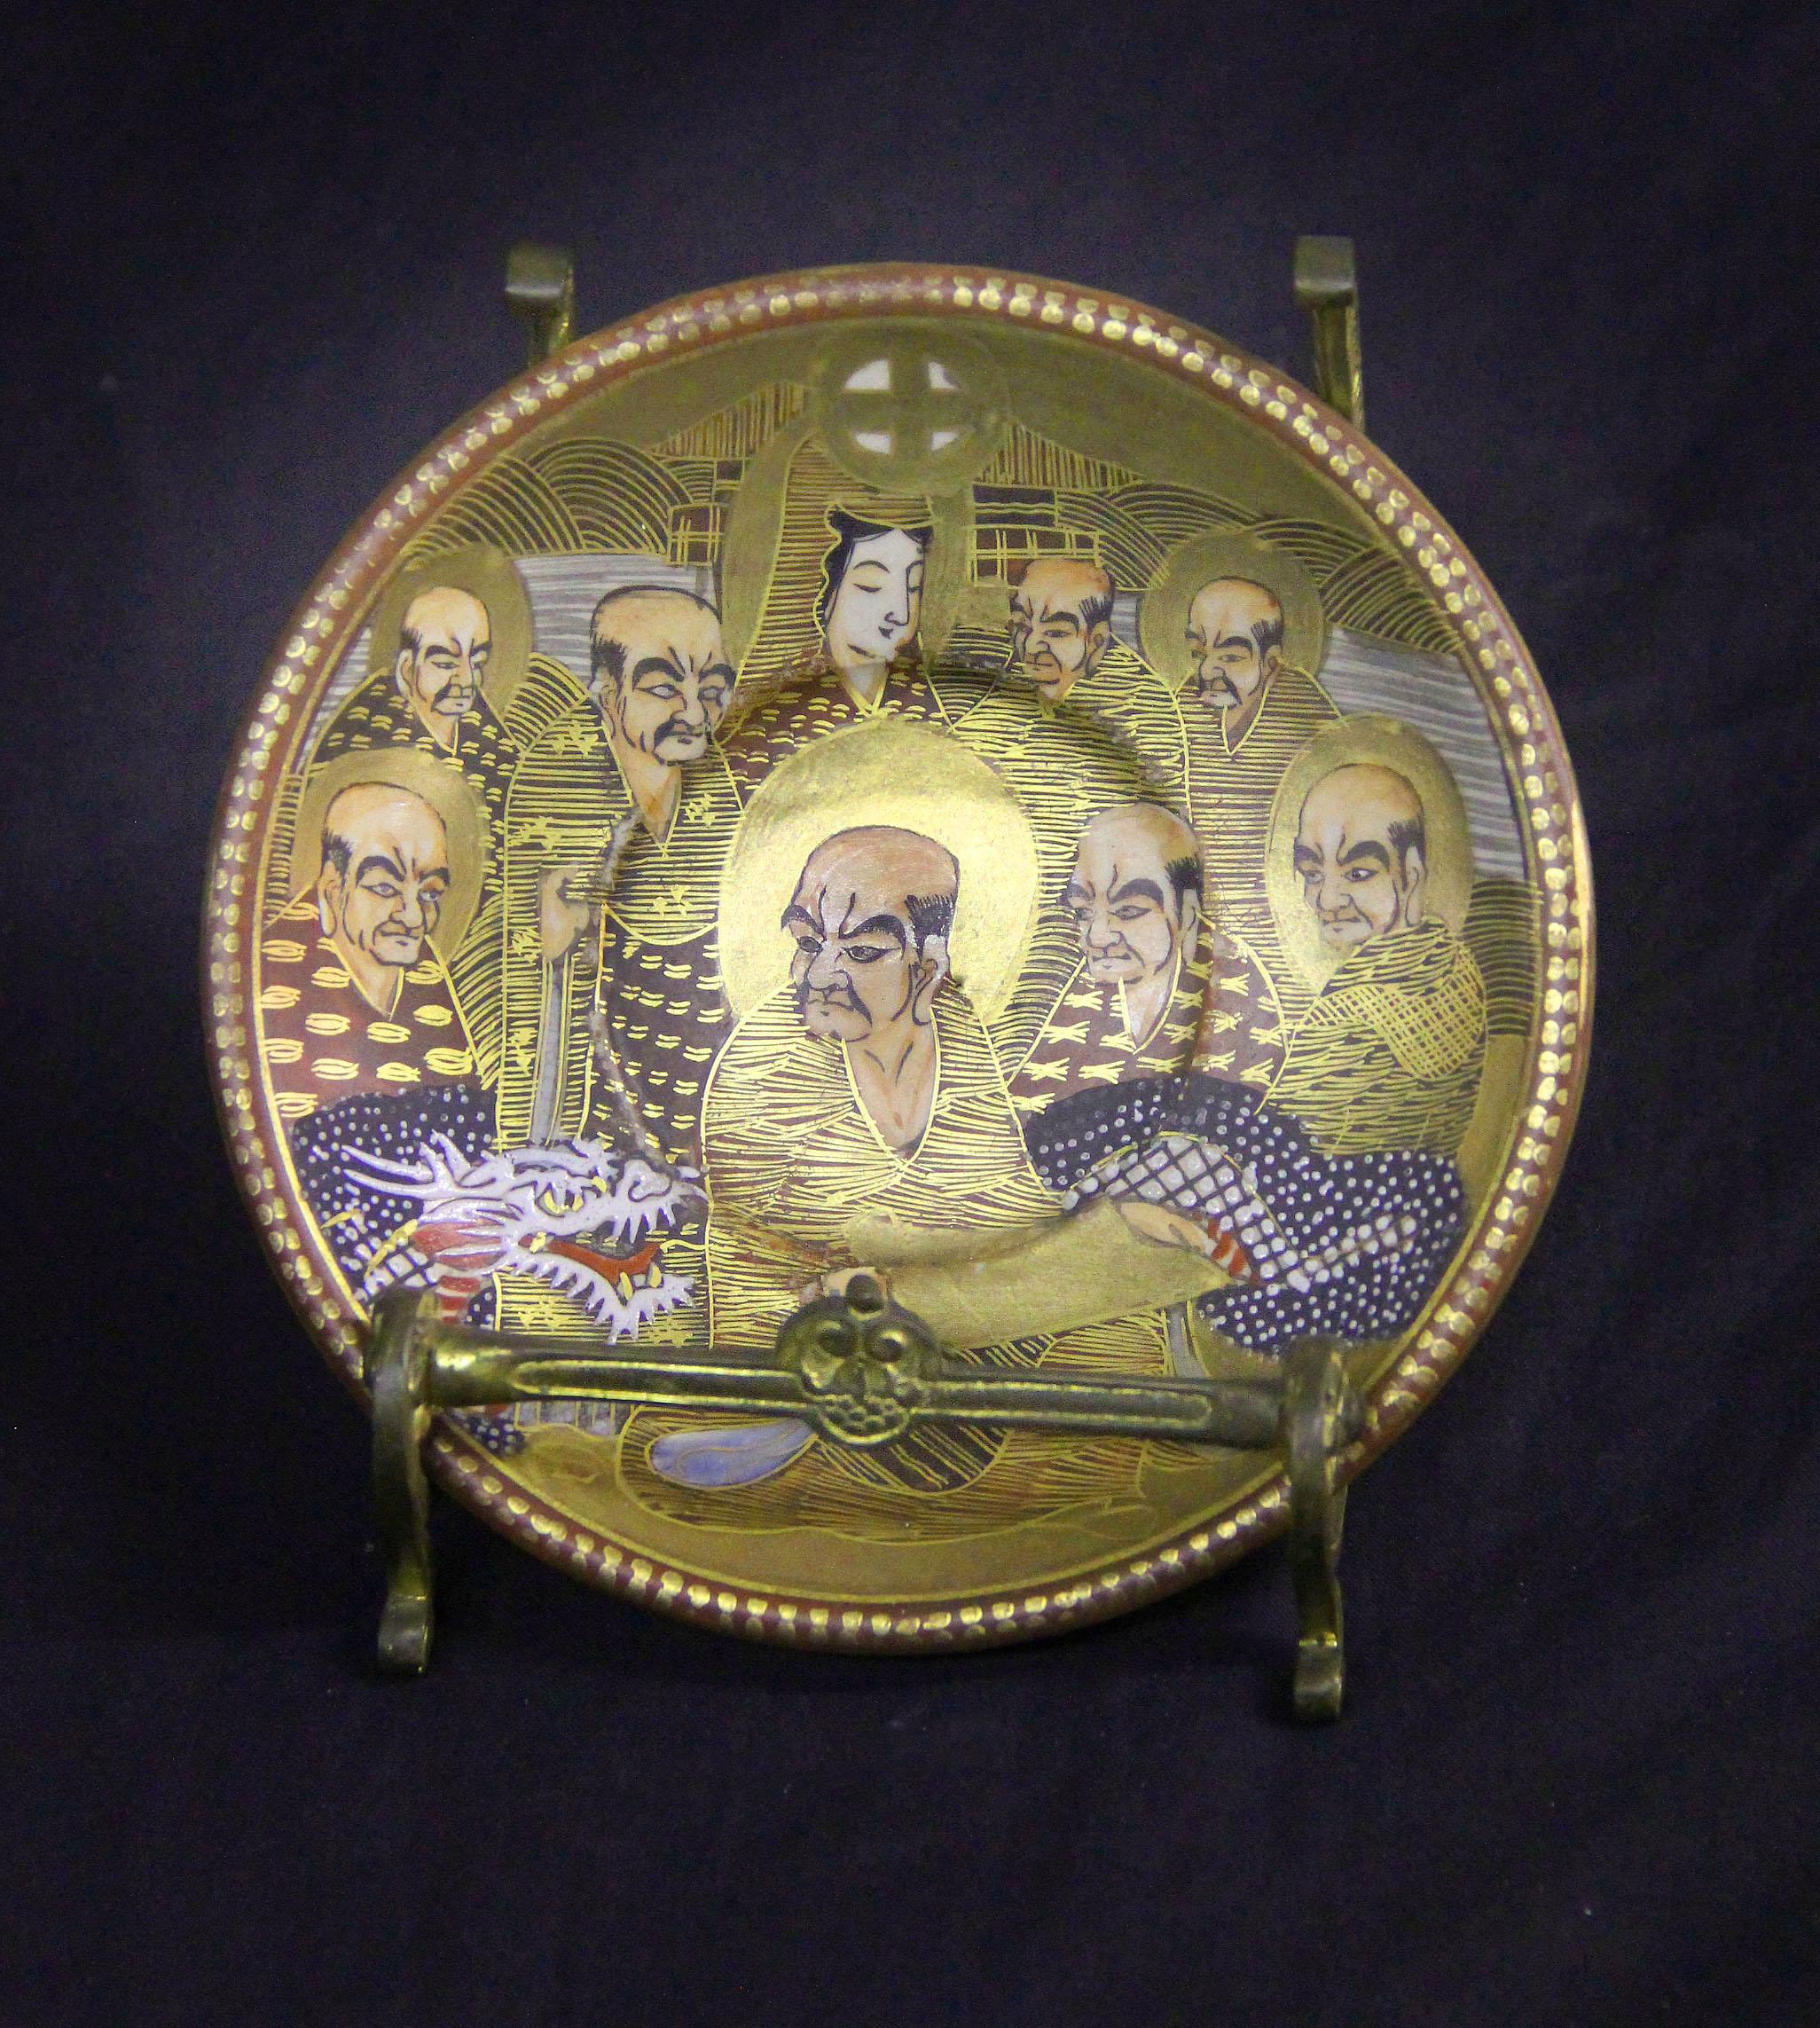 Belle assiette en porcelaine impériale japonaise Satsuma du début du 20e siècle

Magnifiquement peinte avec des hommes, des femmes et un dragon, dans un cadre en bronze.

Détails :
Hauteur sur pied - 4 pouces / 10cm
Diamètre de l'assiette - 4.75